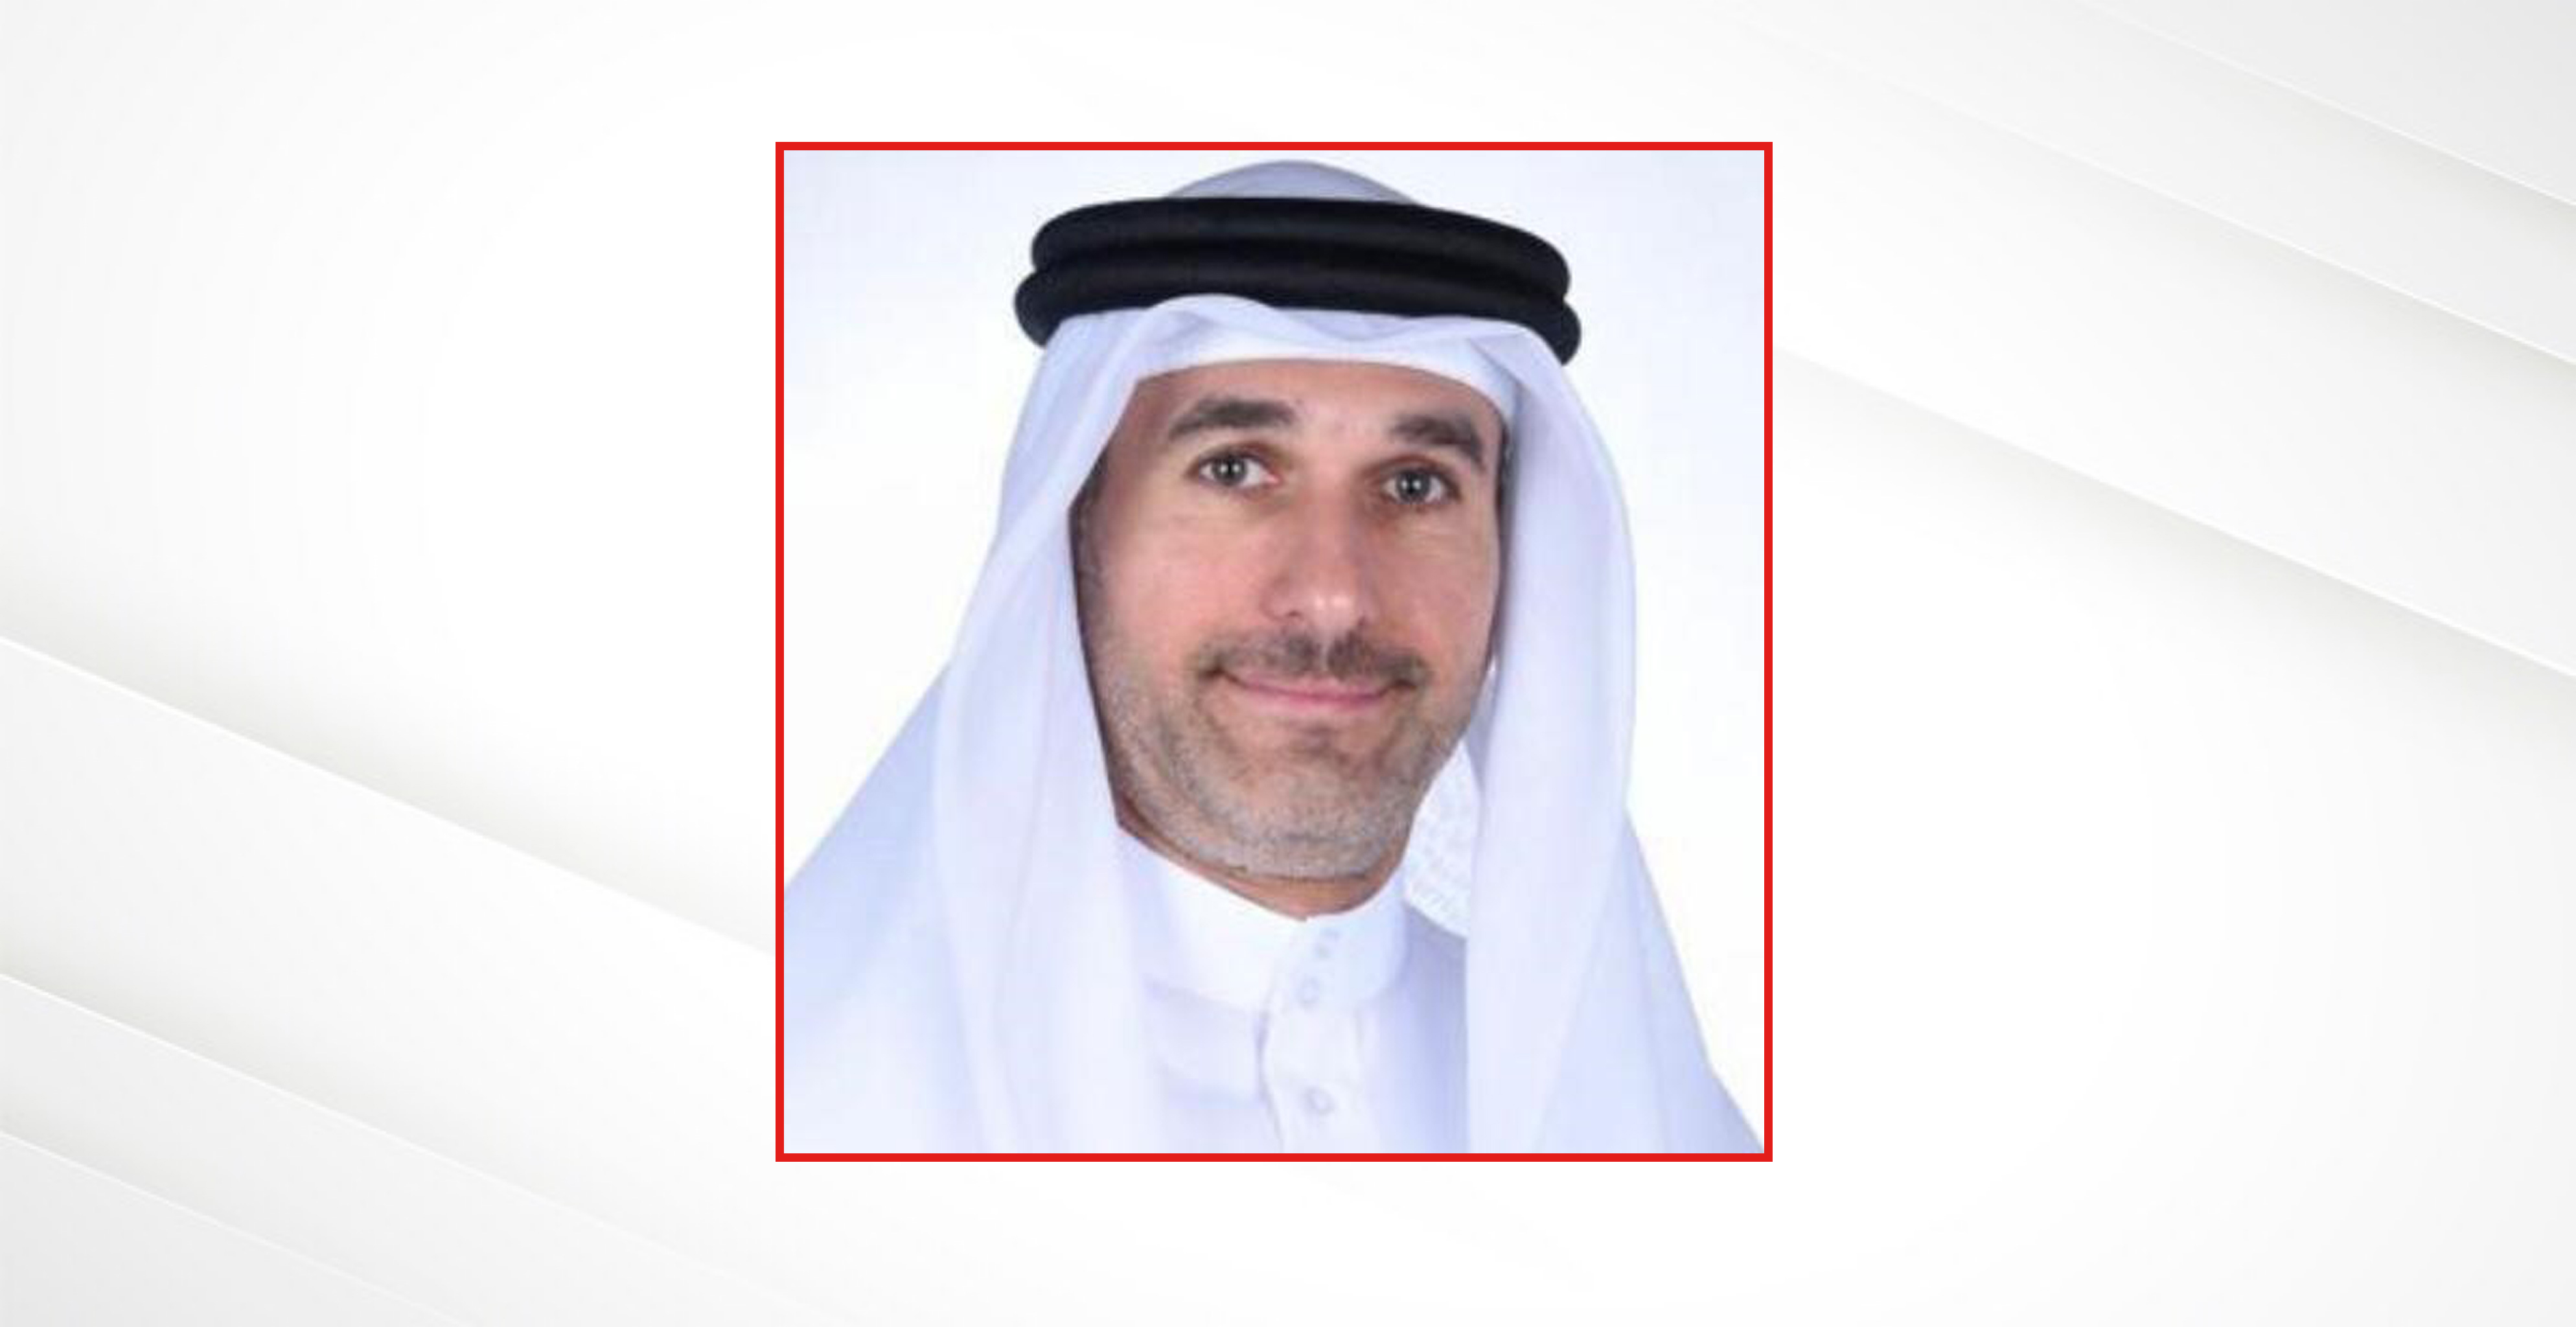  الدكتور نواف فيصل الحمر رئيساً للجنة اختيار الطبيب المرشح لجائزة الطبيب العربي لعام 2023